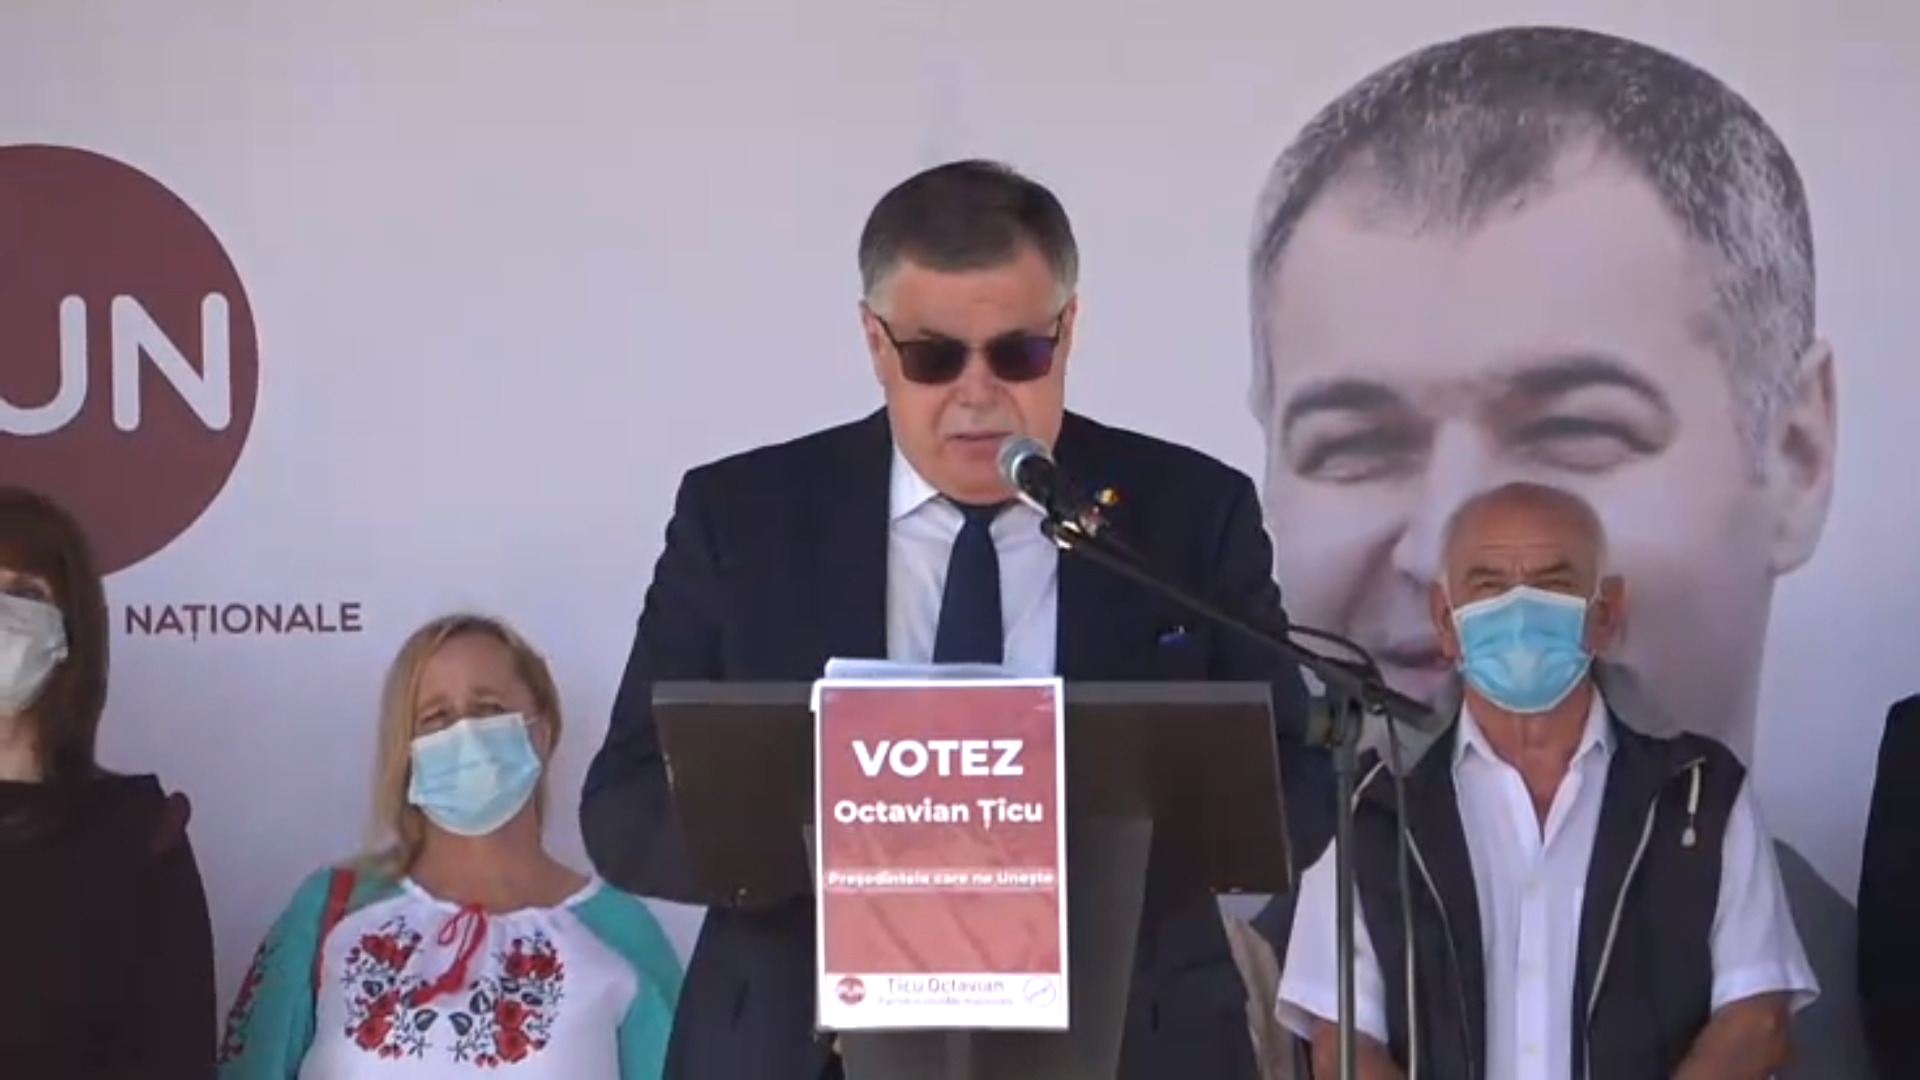 Octavian Țîcu s-a lansat în campania electorală. Un deputat al fracțiunii parlamentare Platforma DA a venit să îl susțină